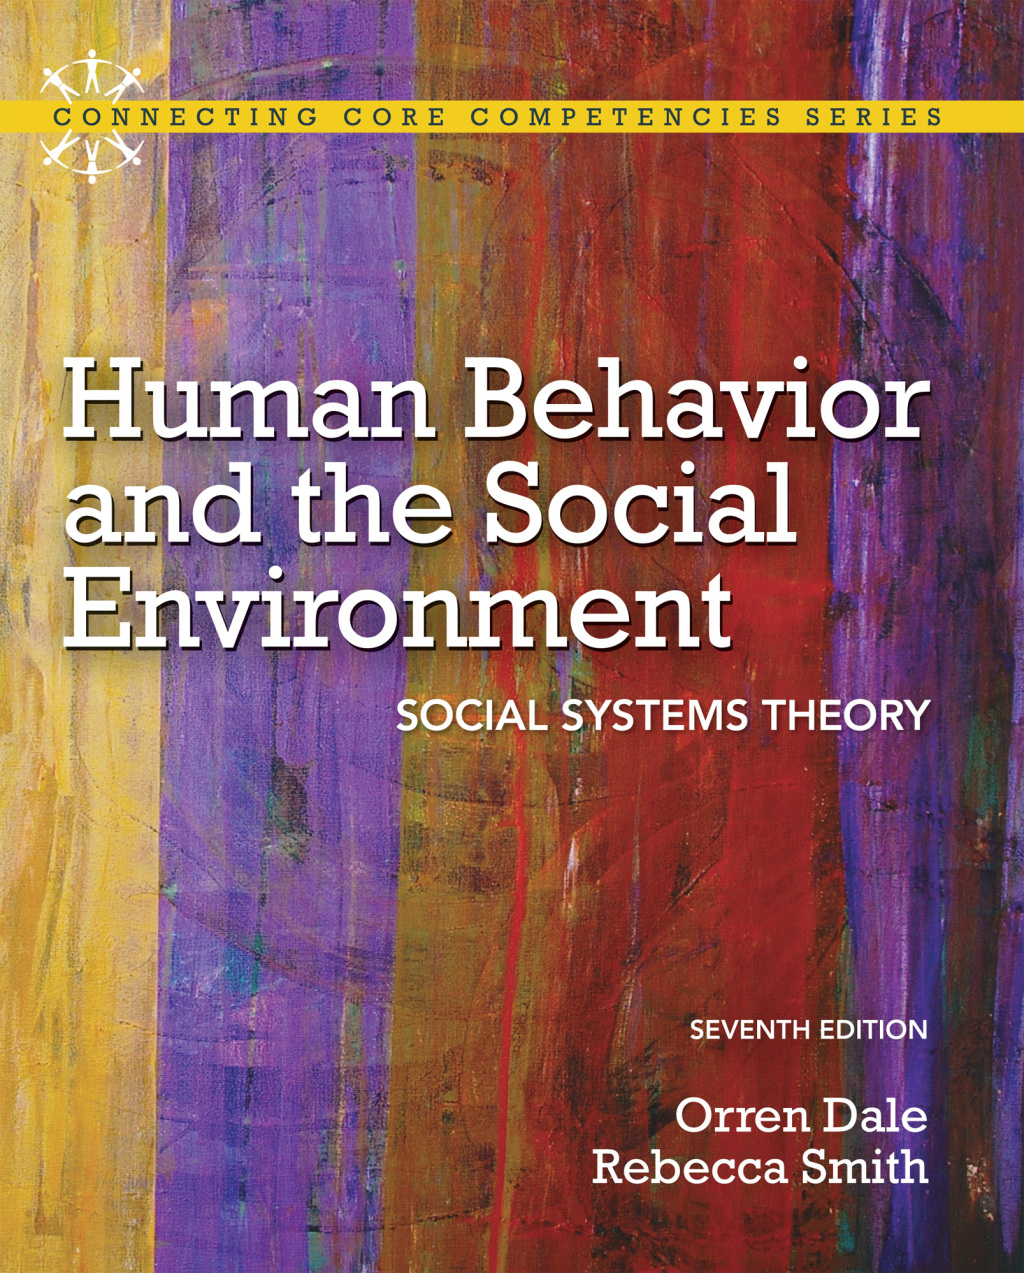 Human Behavior and the Social Environment (eBook) - Rebecca Smith Ph.D